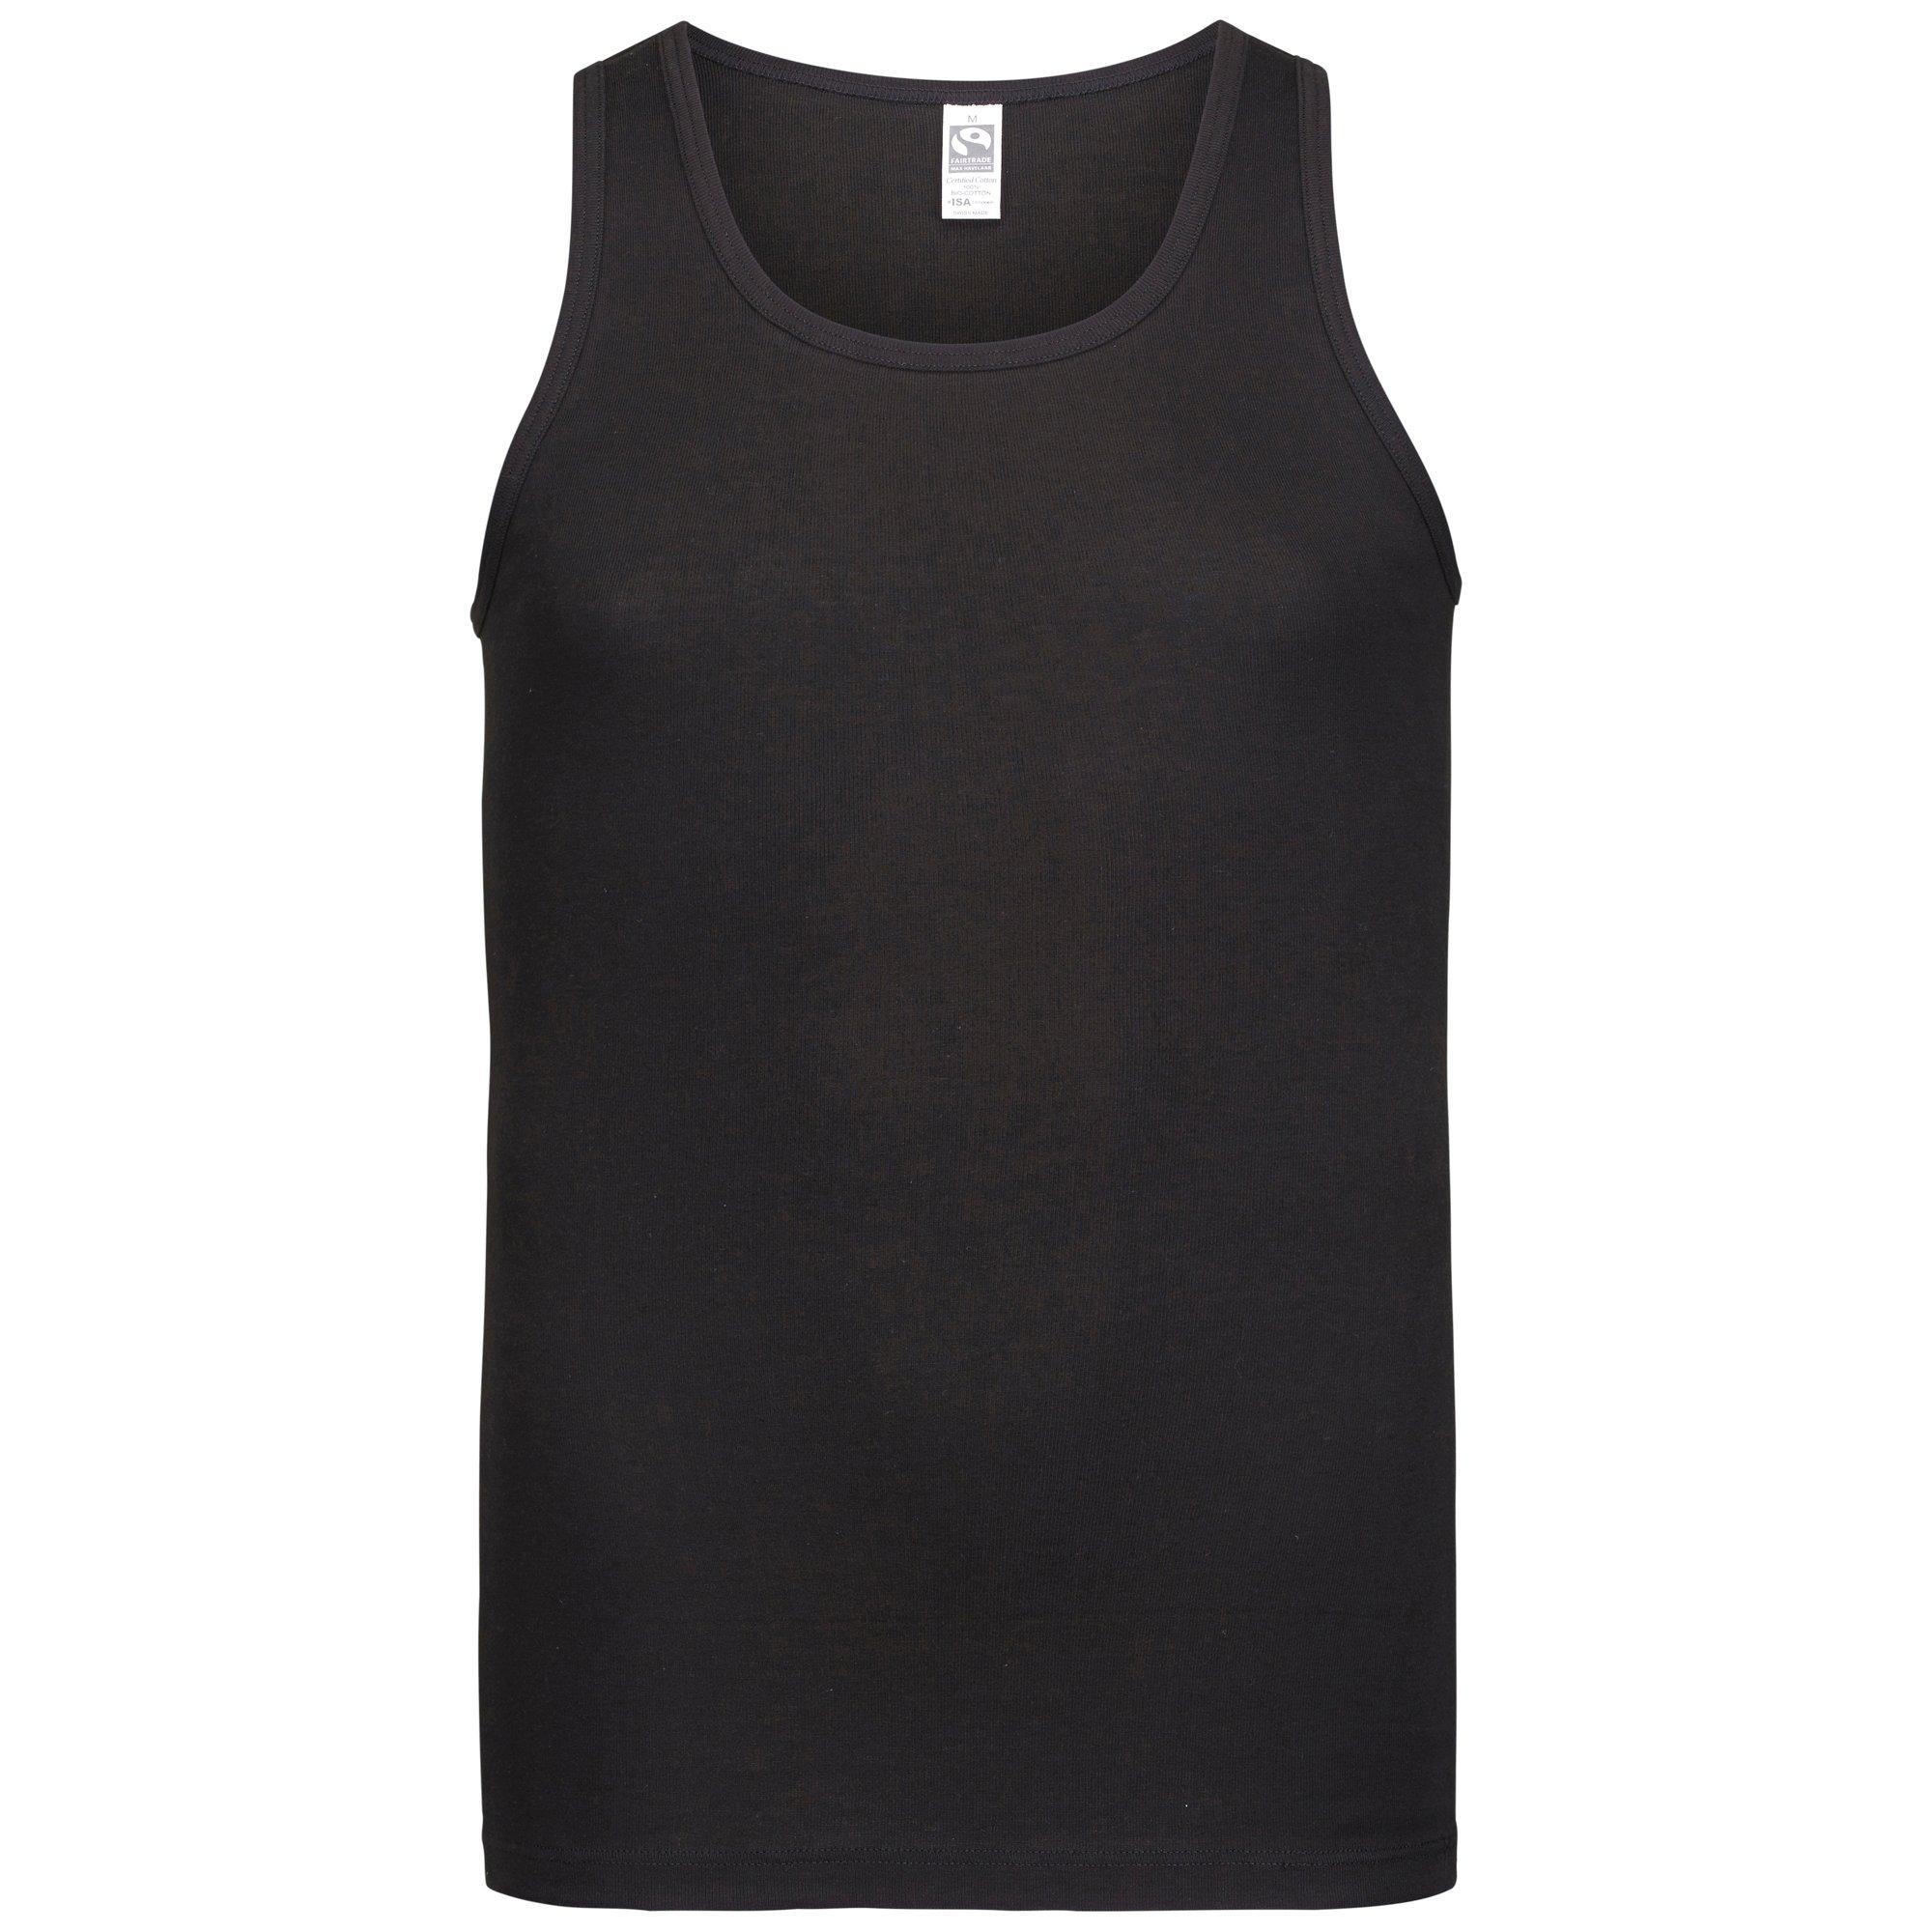 ISA Bodywear Unterhemd »Athletshirt 309109 - Fairtrade«, (1 St.)